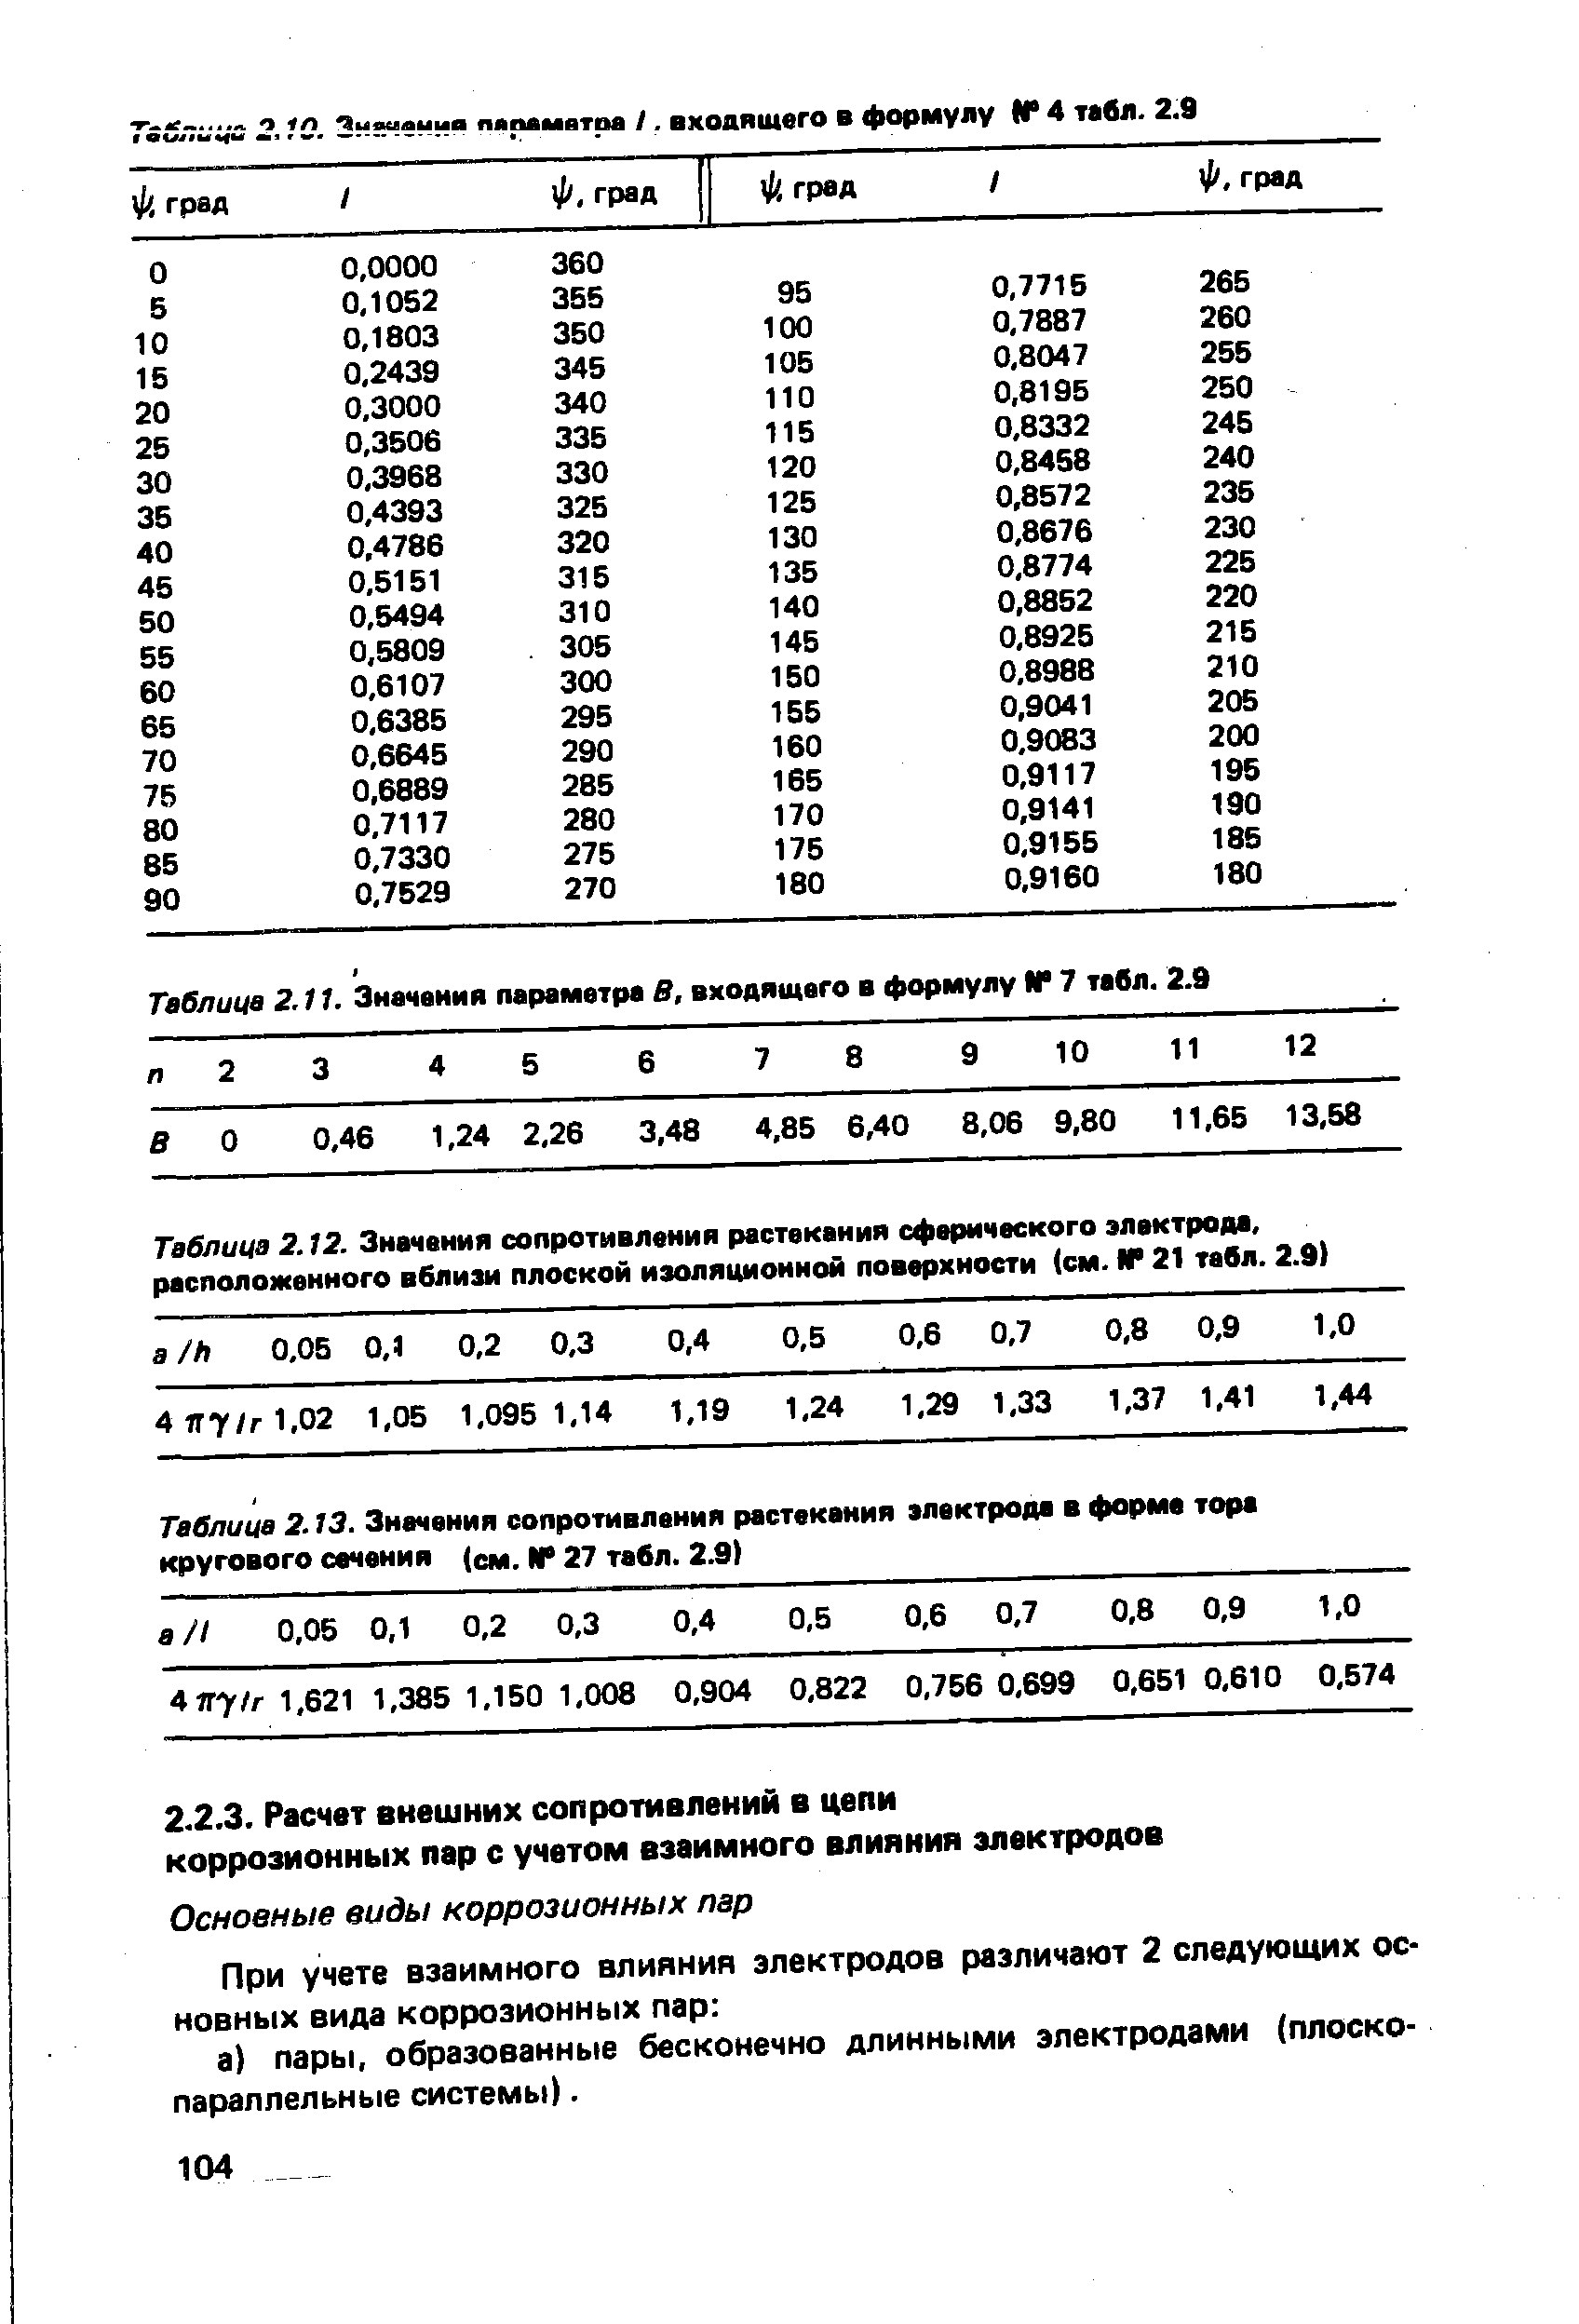 Таблица 2.13. Значения сопротивления растекания электрода в форма тора кругового сачения (см. N 27 табл. 2.9) 